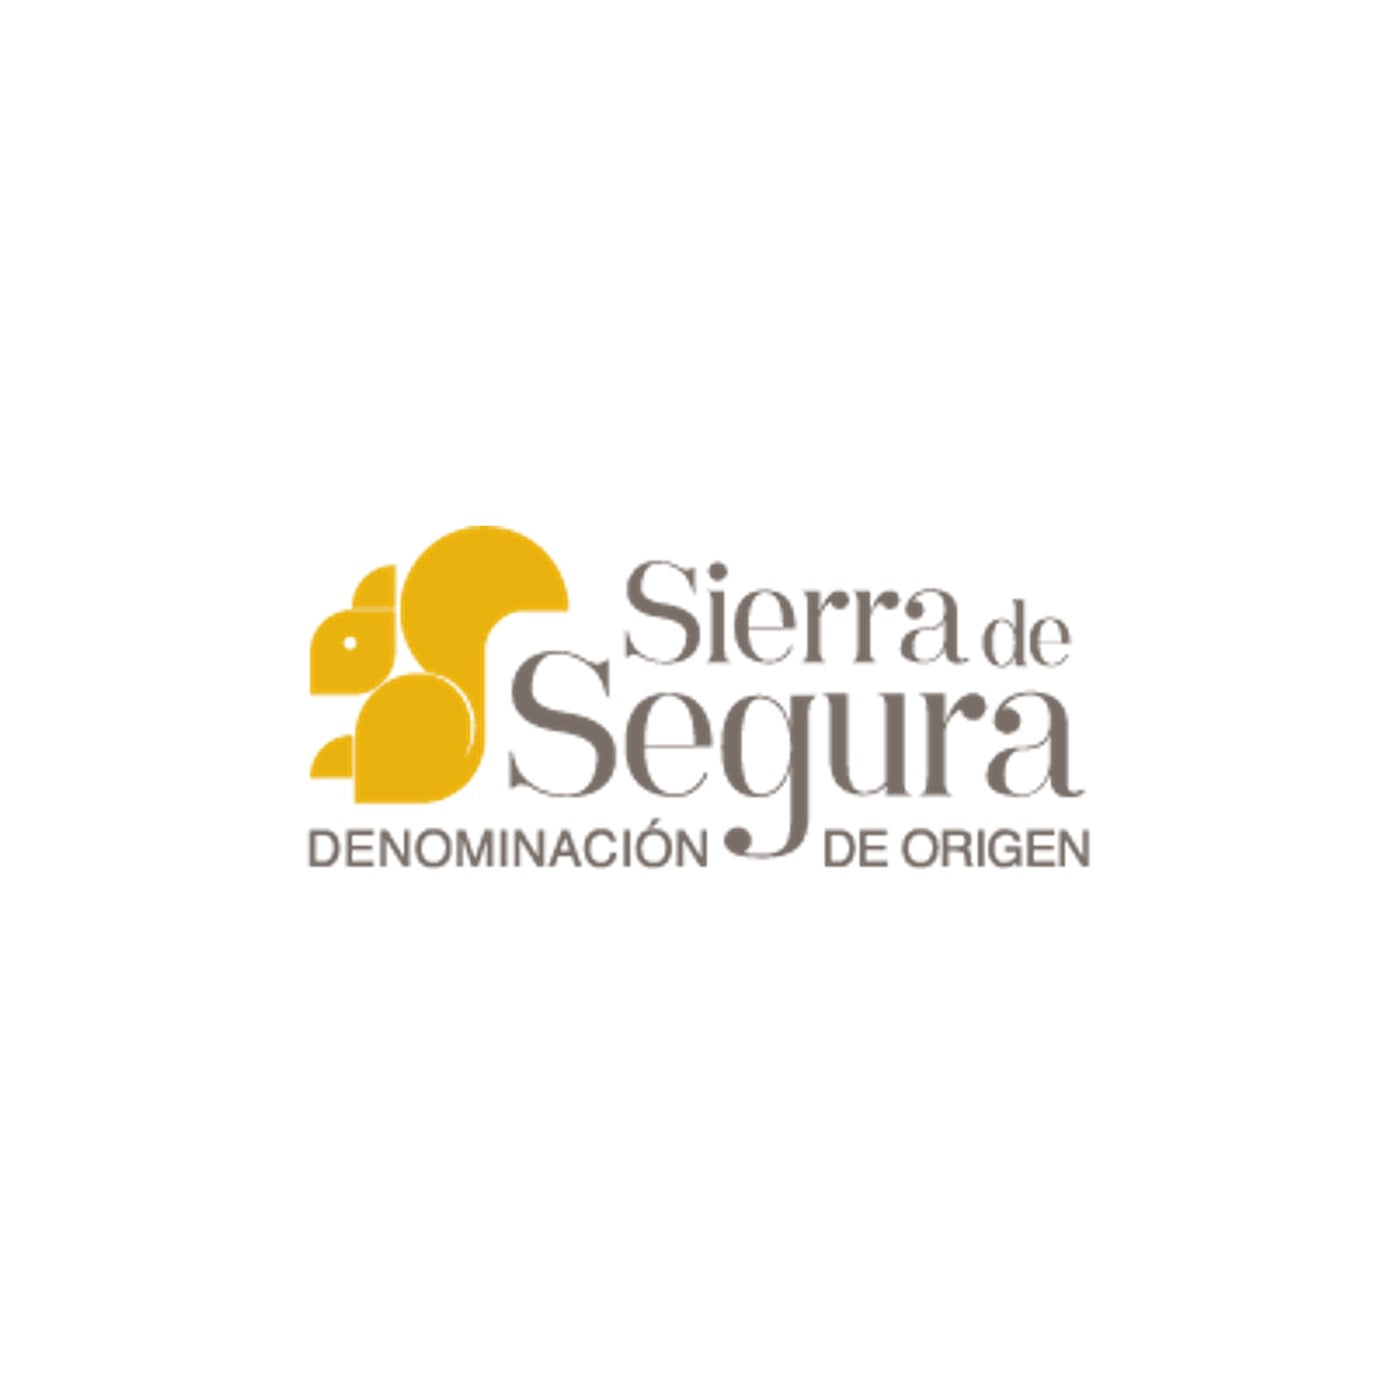 Logo van Denominacion de Origen, kortweg D.O. Sierra de Segura